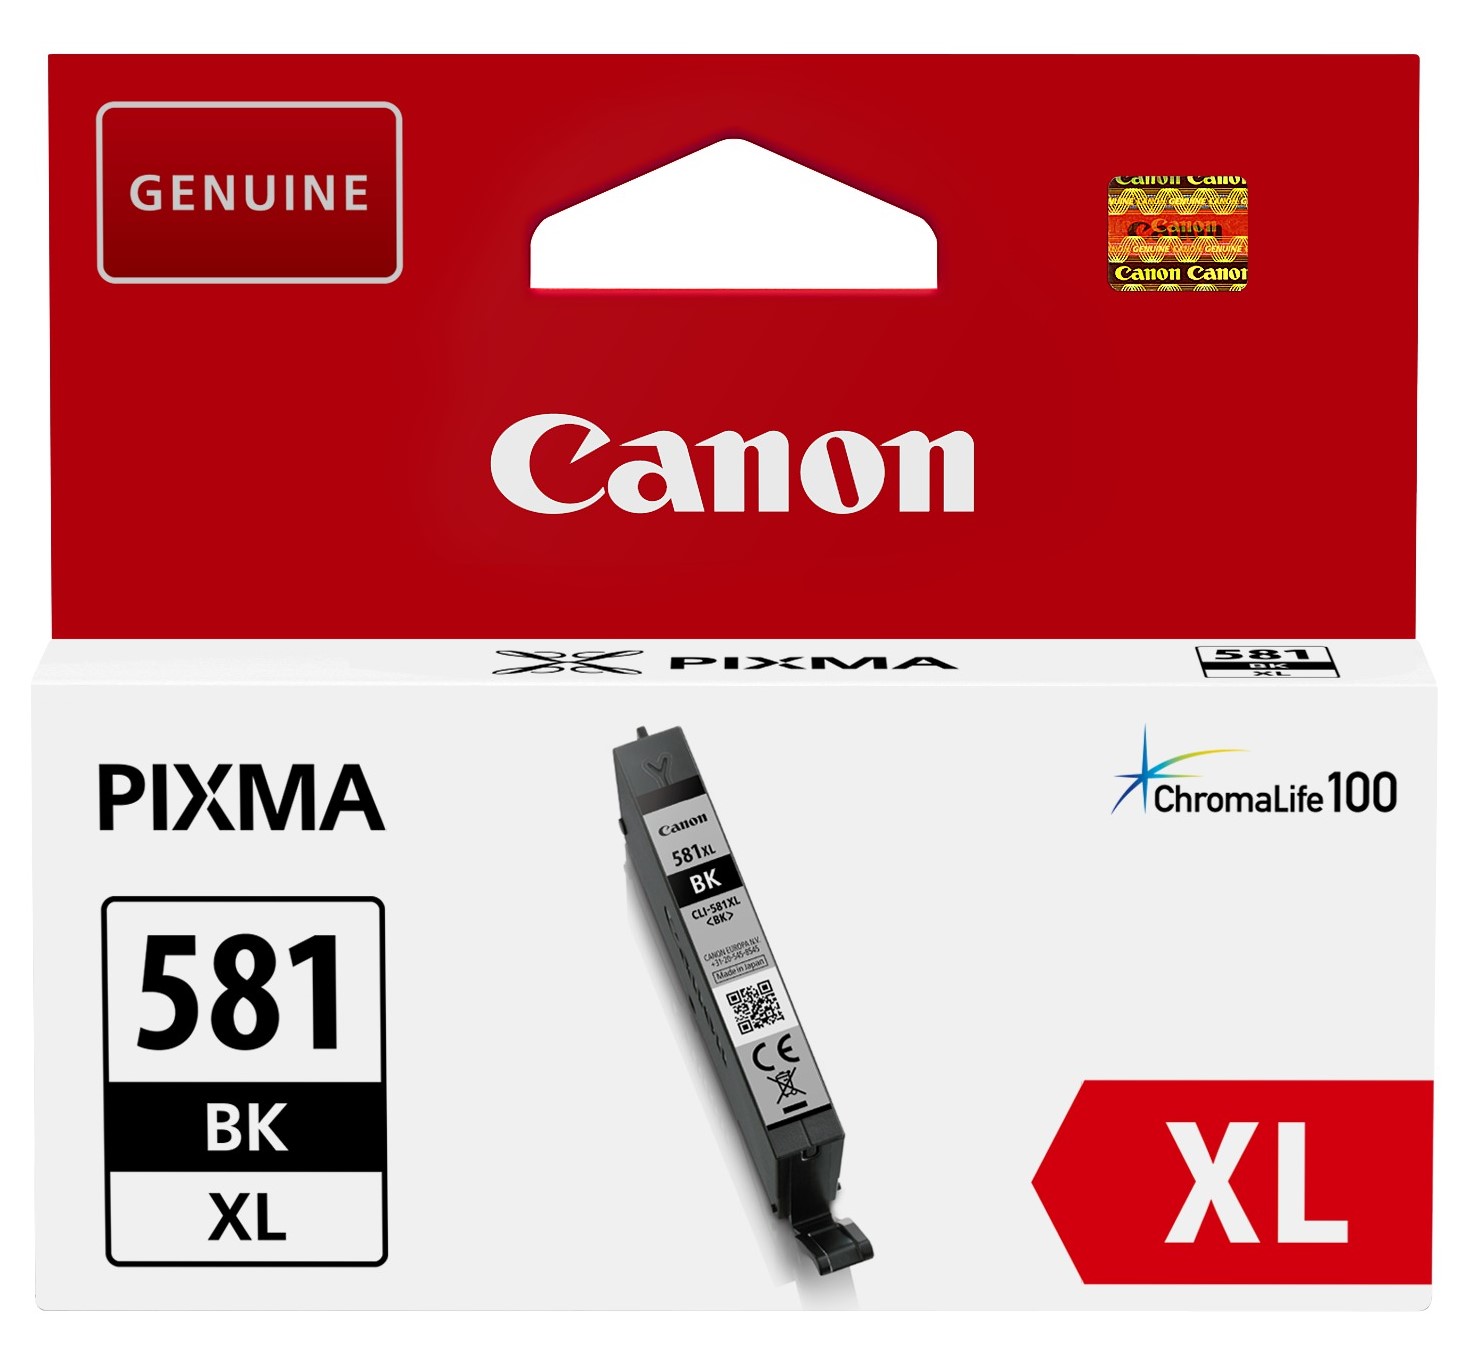 Canon CLI-581XL BK Tinte schwarz